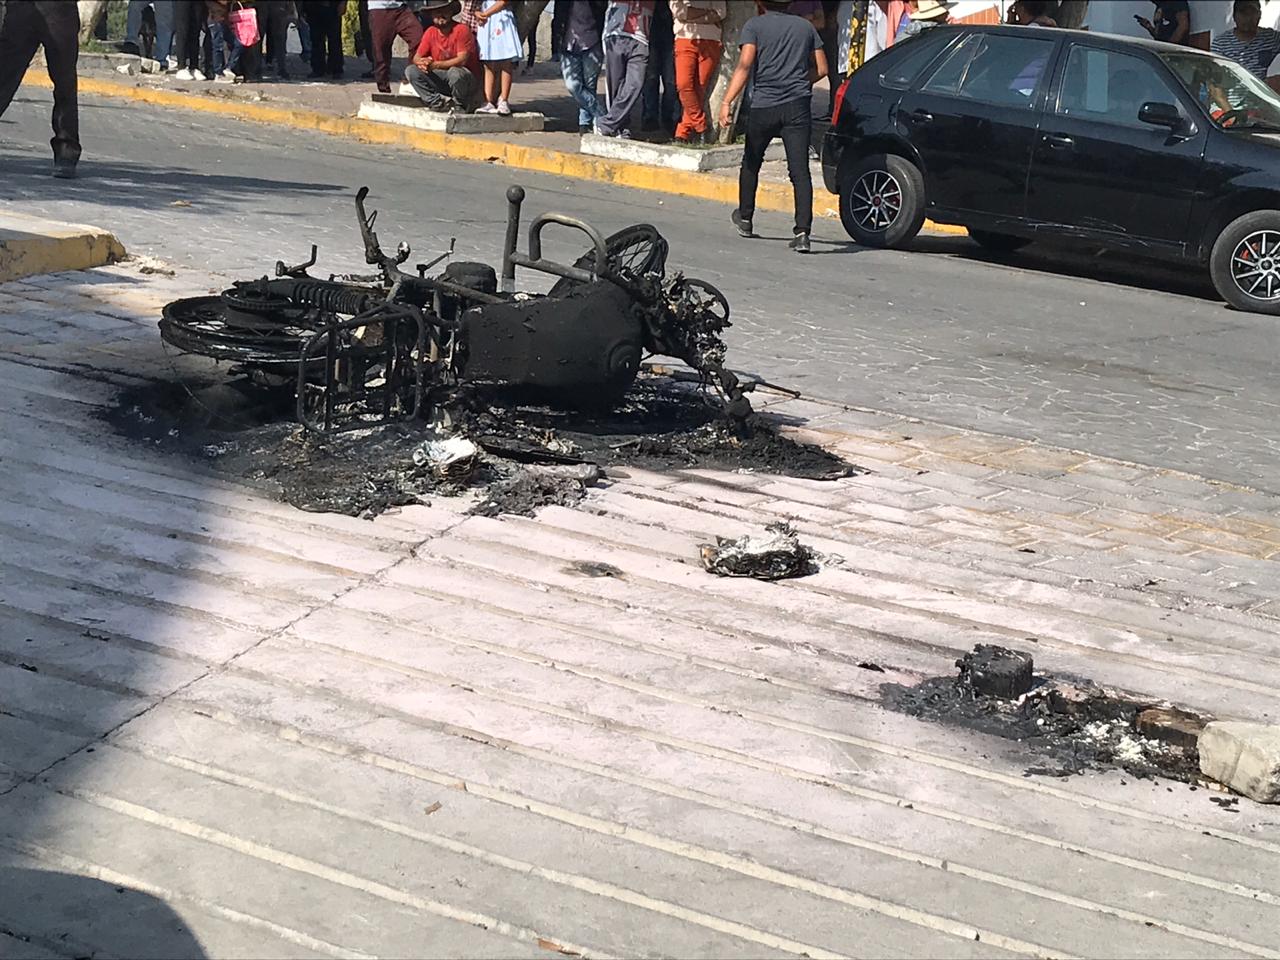 Causan destrozos y queman moto patrullas en Totolac